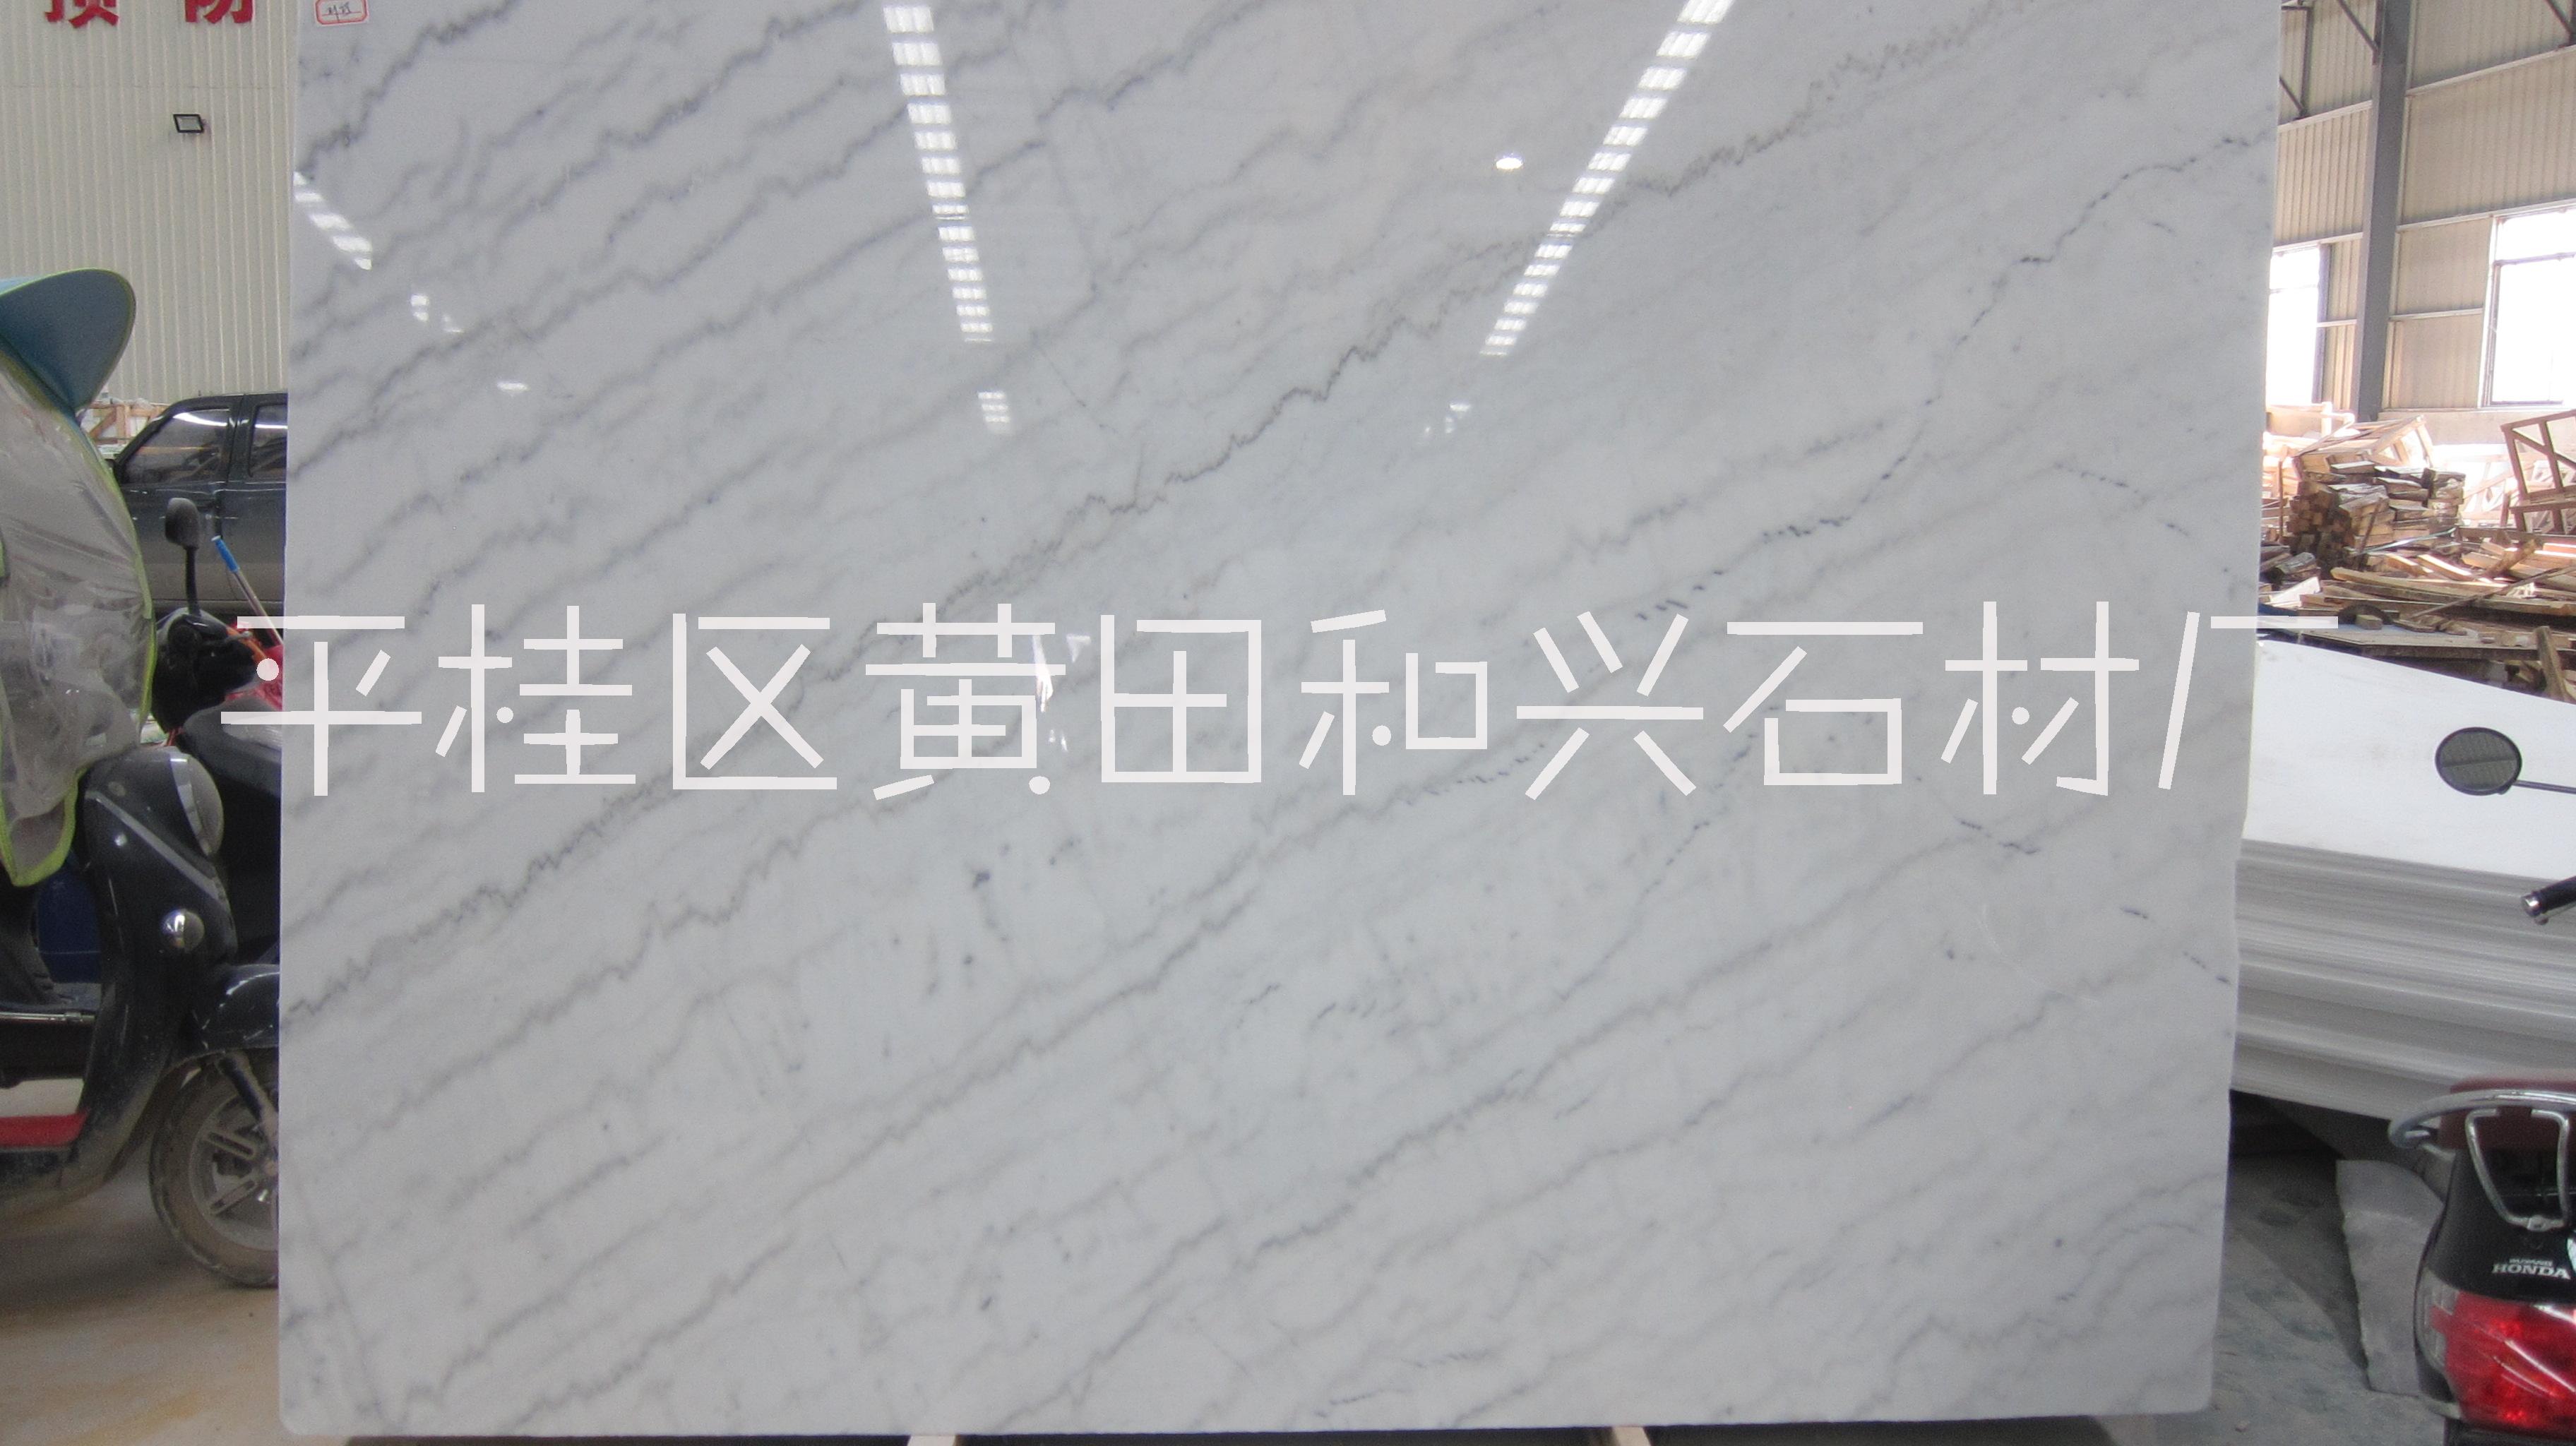 贺州市广西白大理石厂家广西白天然大理石板材批发厂家 专业定制厚度1.8公分 广西白大理石